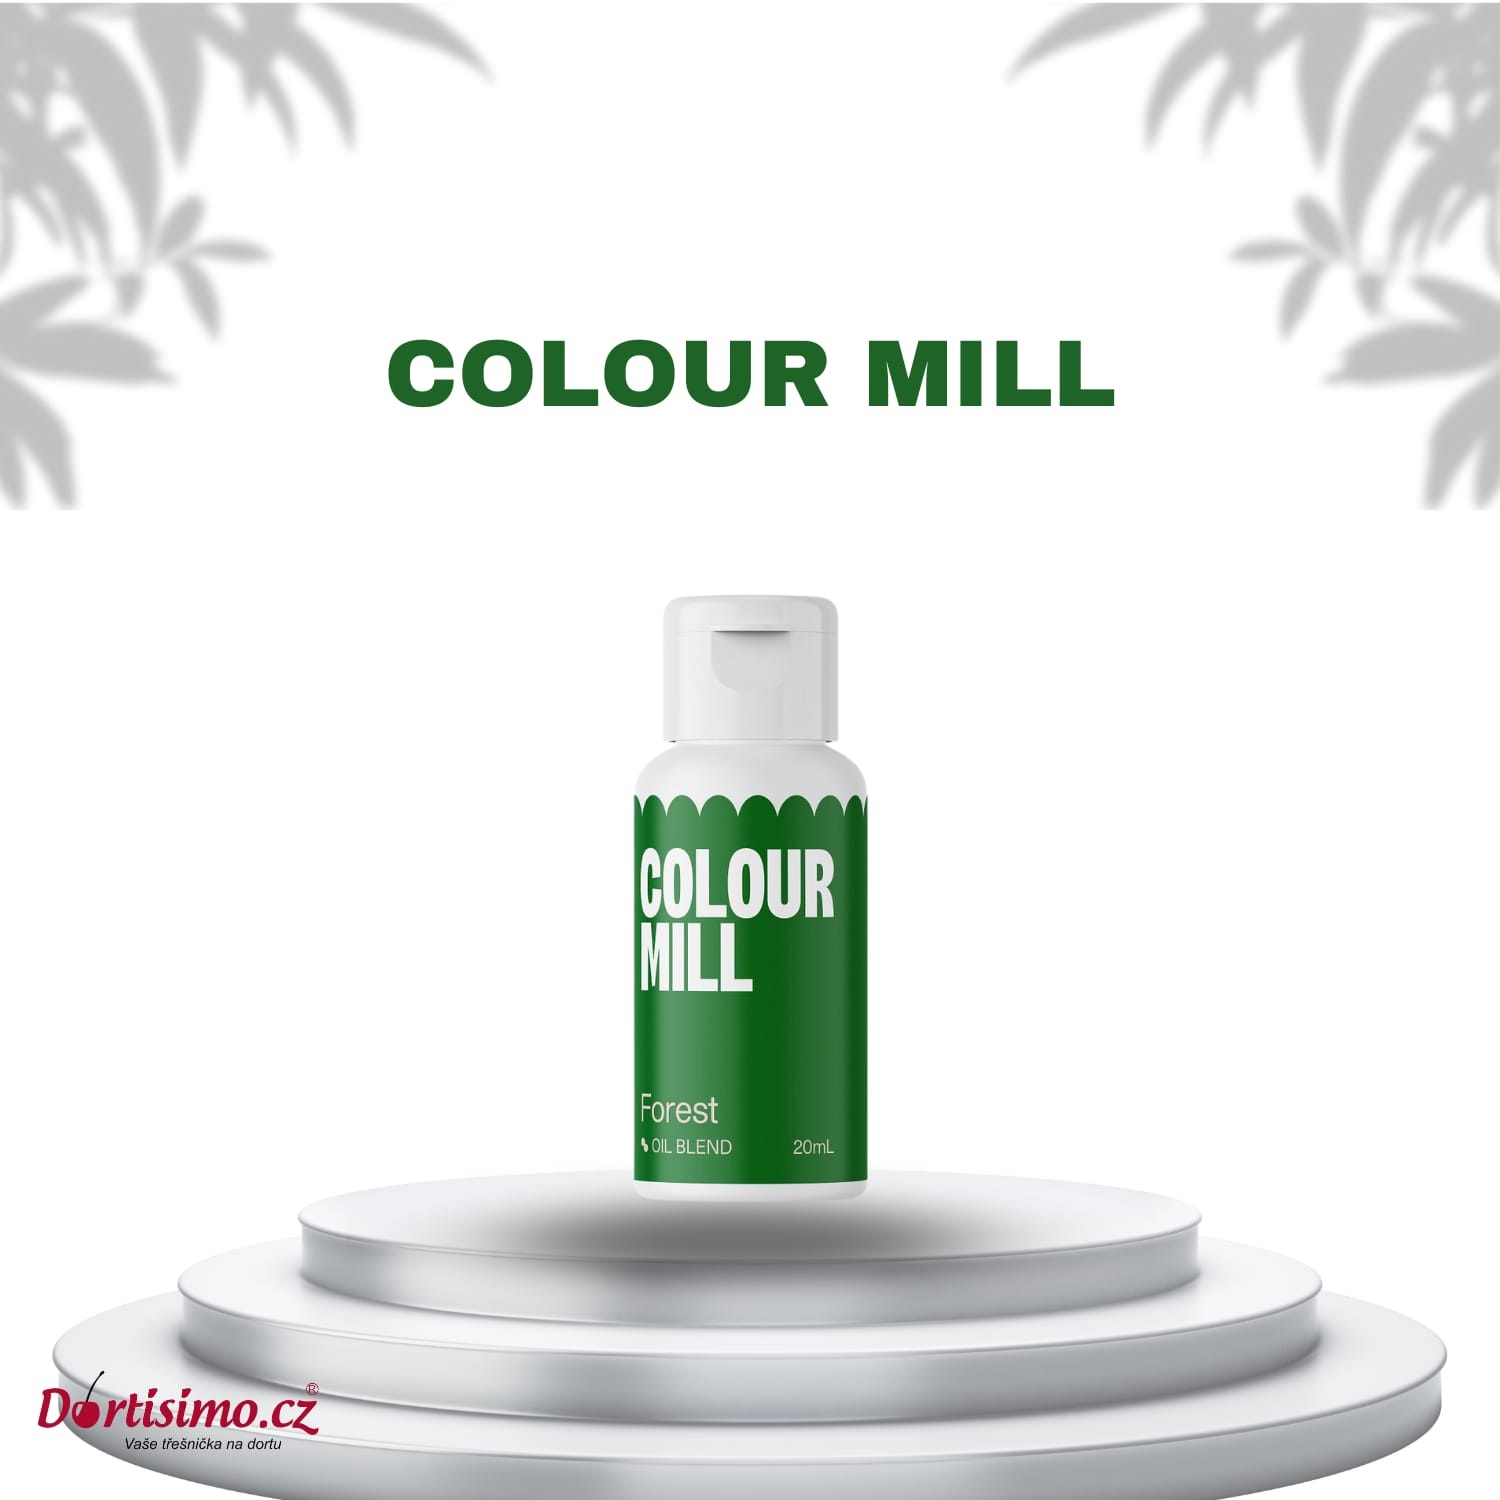 Obrázek k výrobku 23684 - Colour Mill olejová farba Forest (20ml)